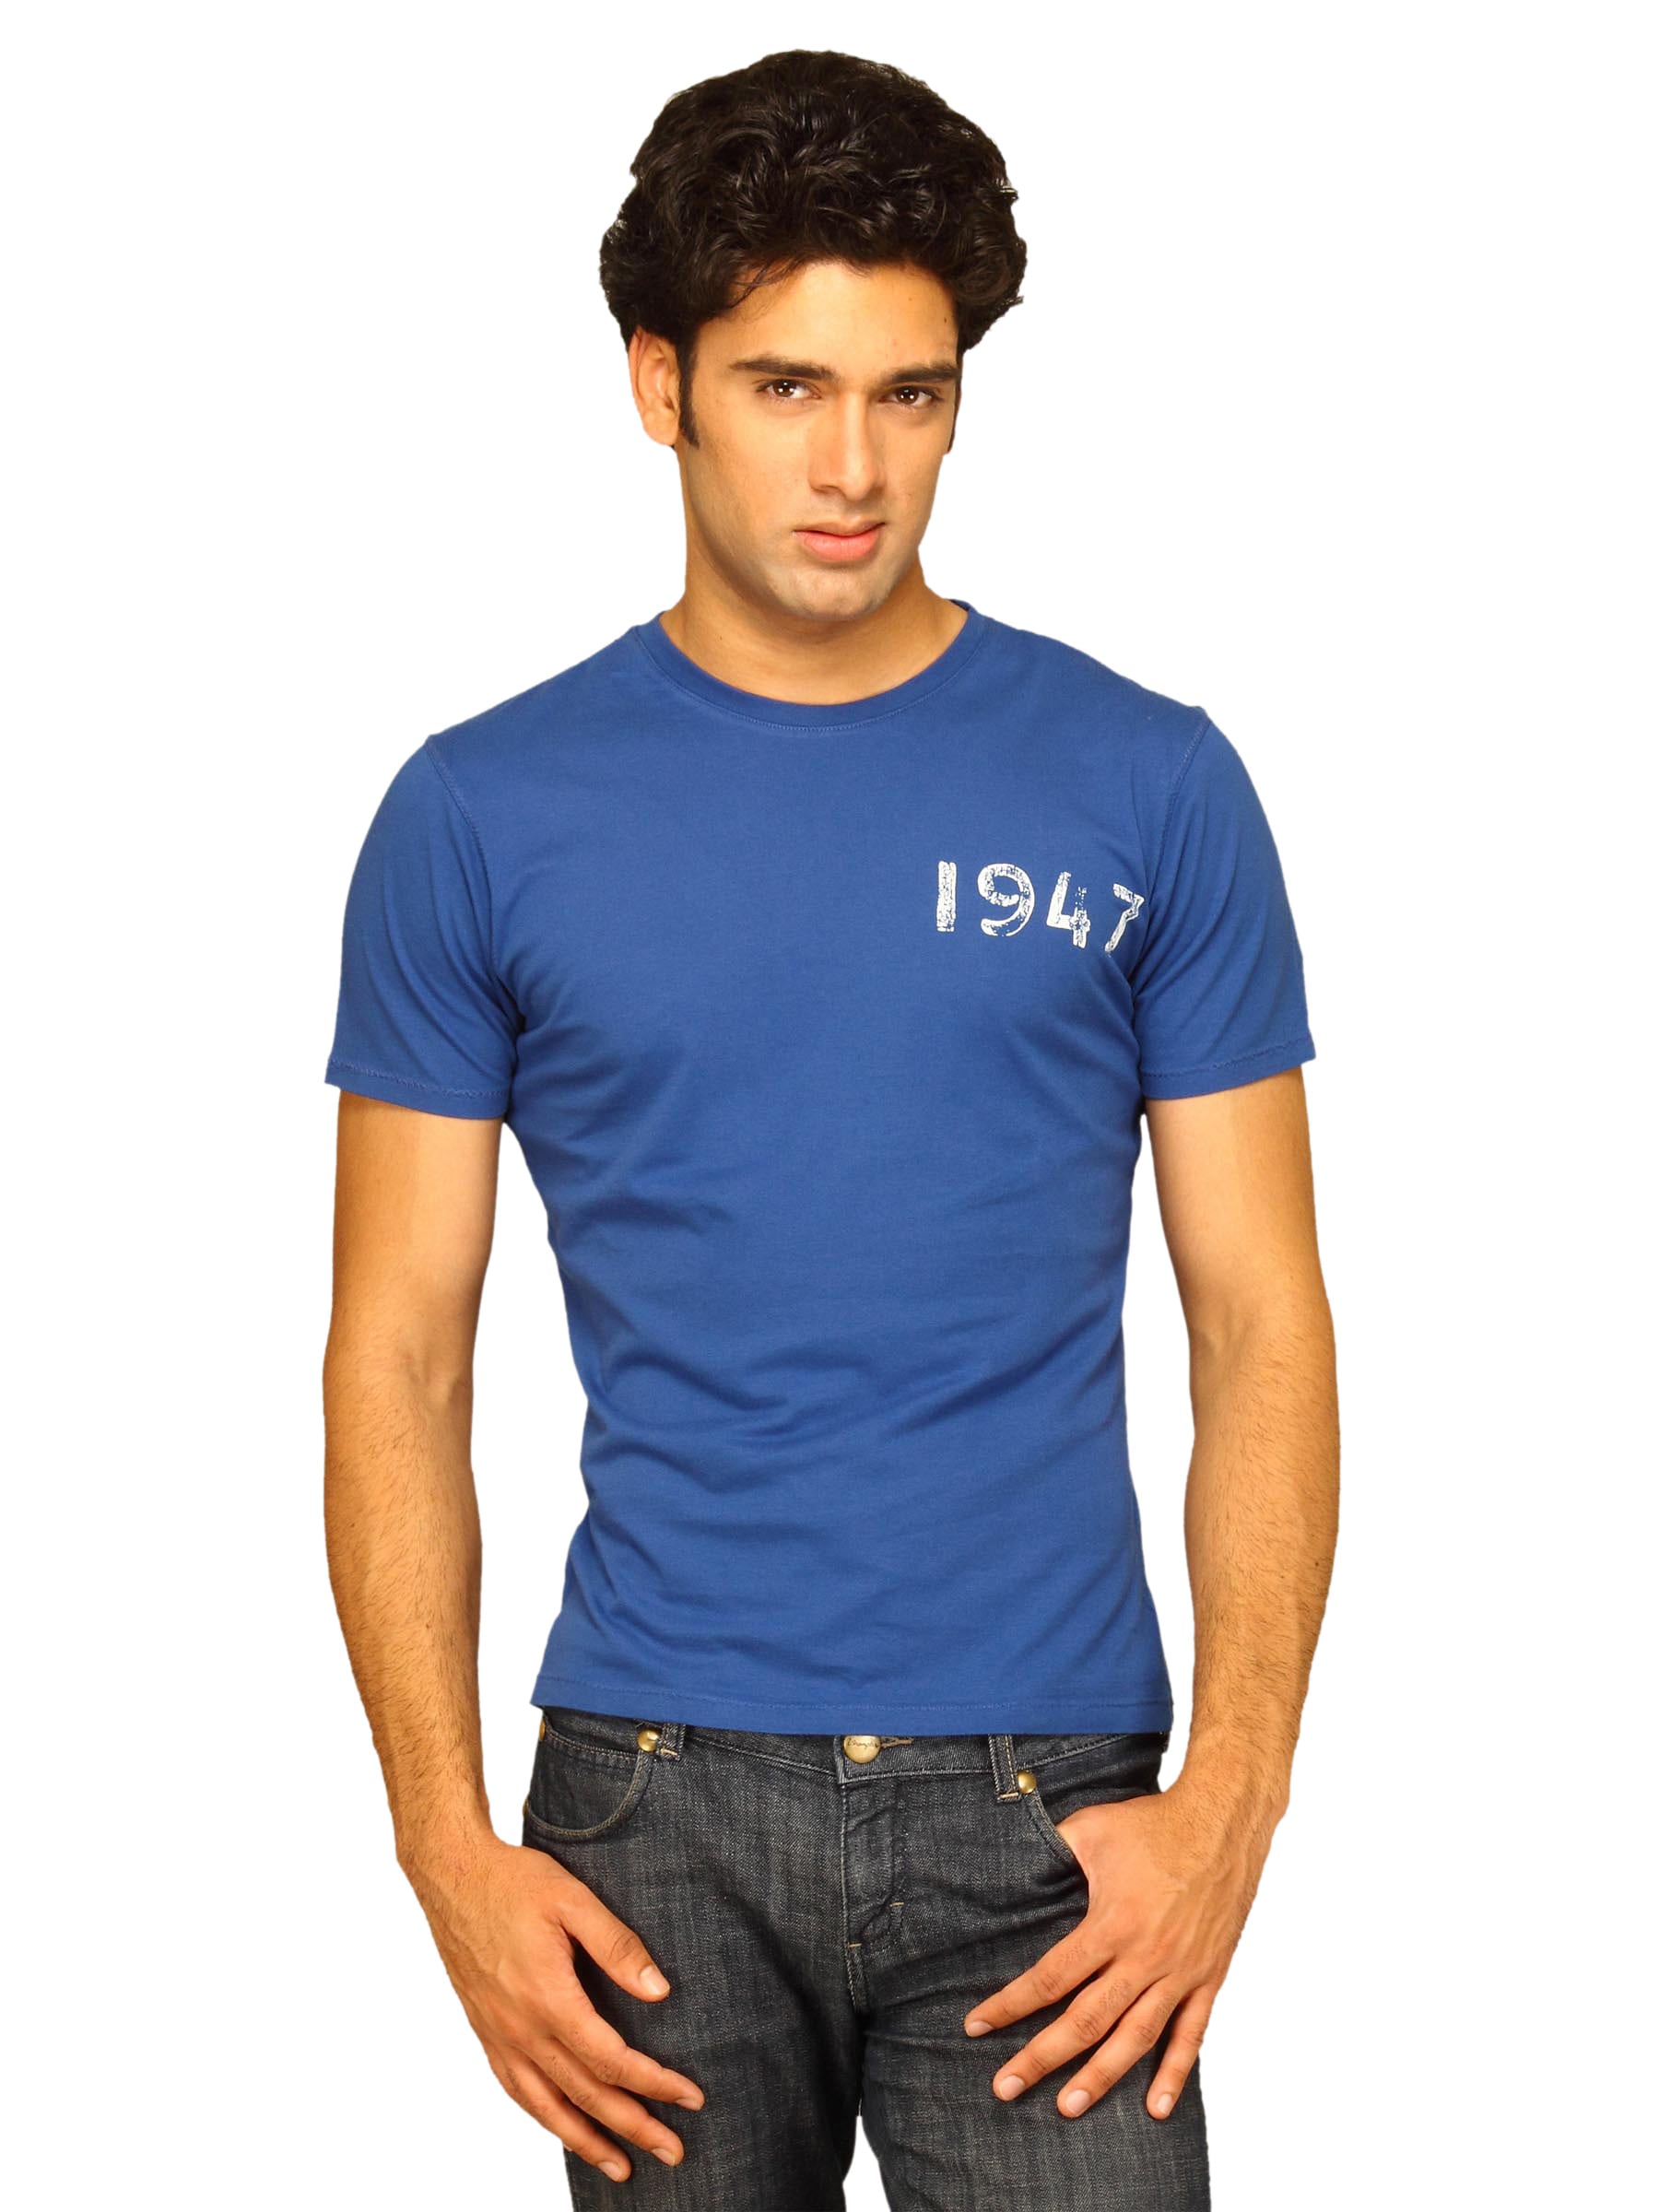 Wrangler Men's 1947 Light Weight Blue T-shirt